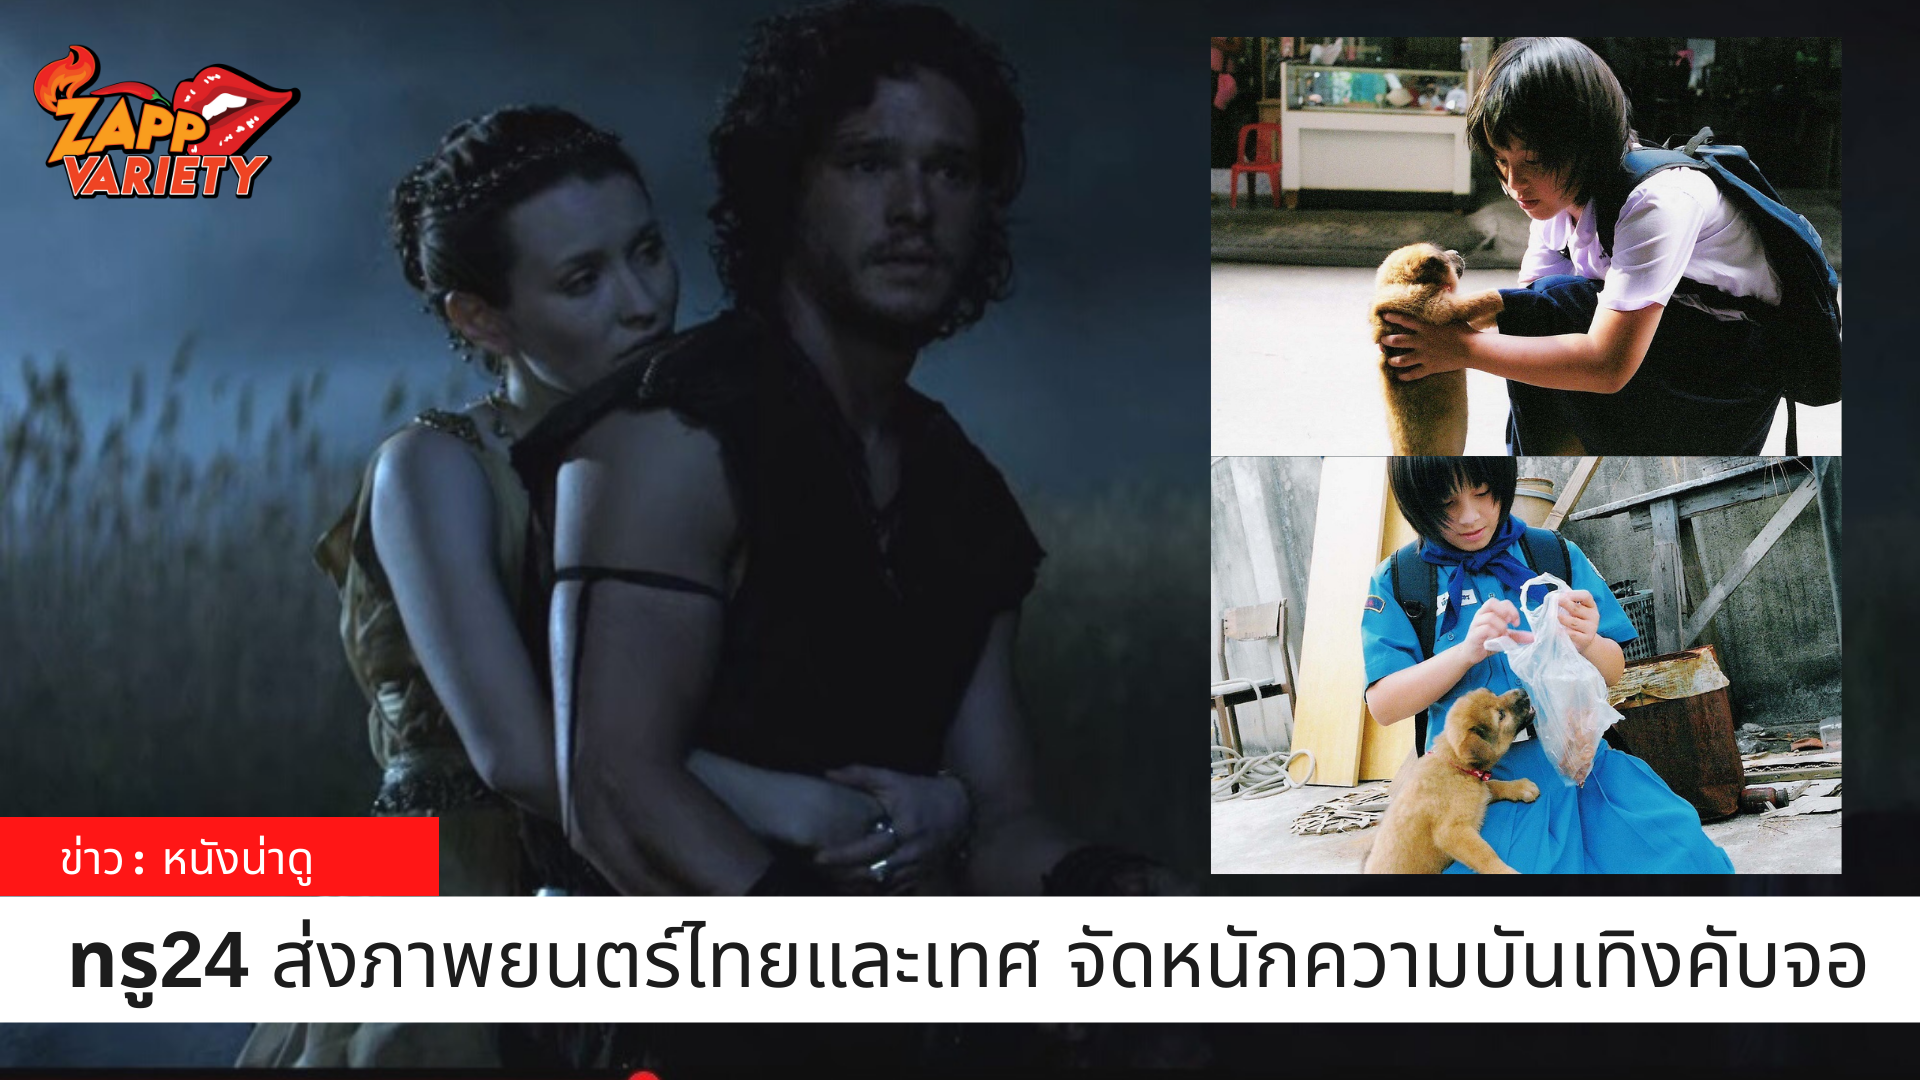 ทรูโฟร์ยู ช่อง 24 ส่งภาพยนตร์ไทยและเทศจัดหนักความบันเทิงคับจอ